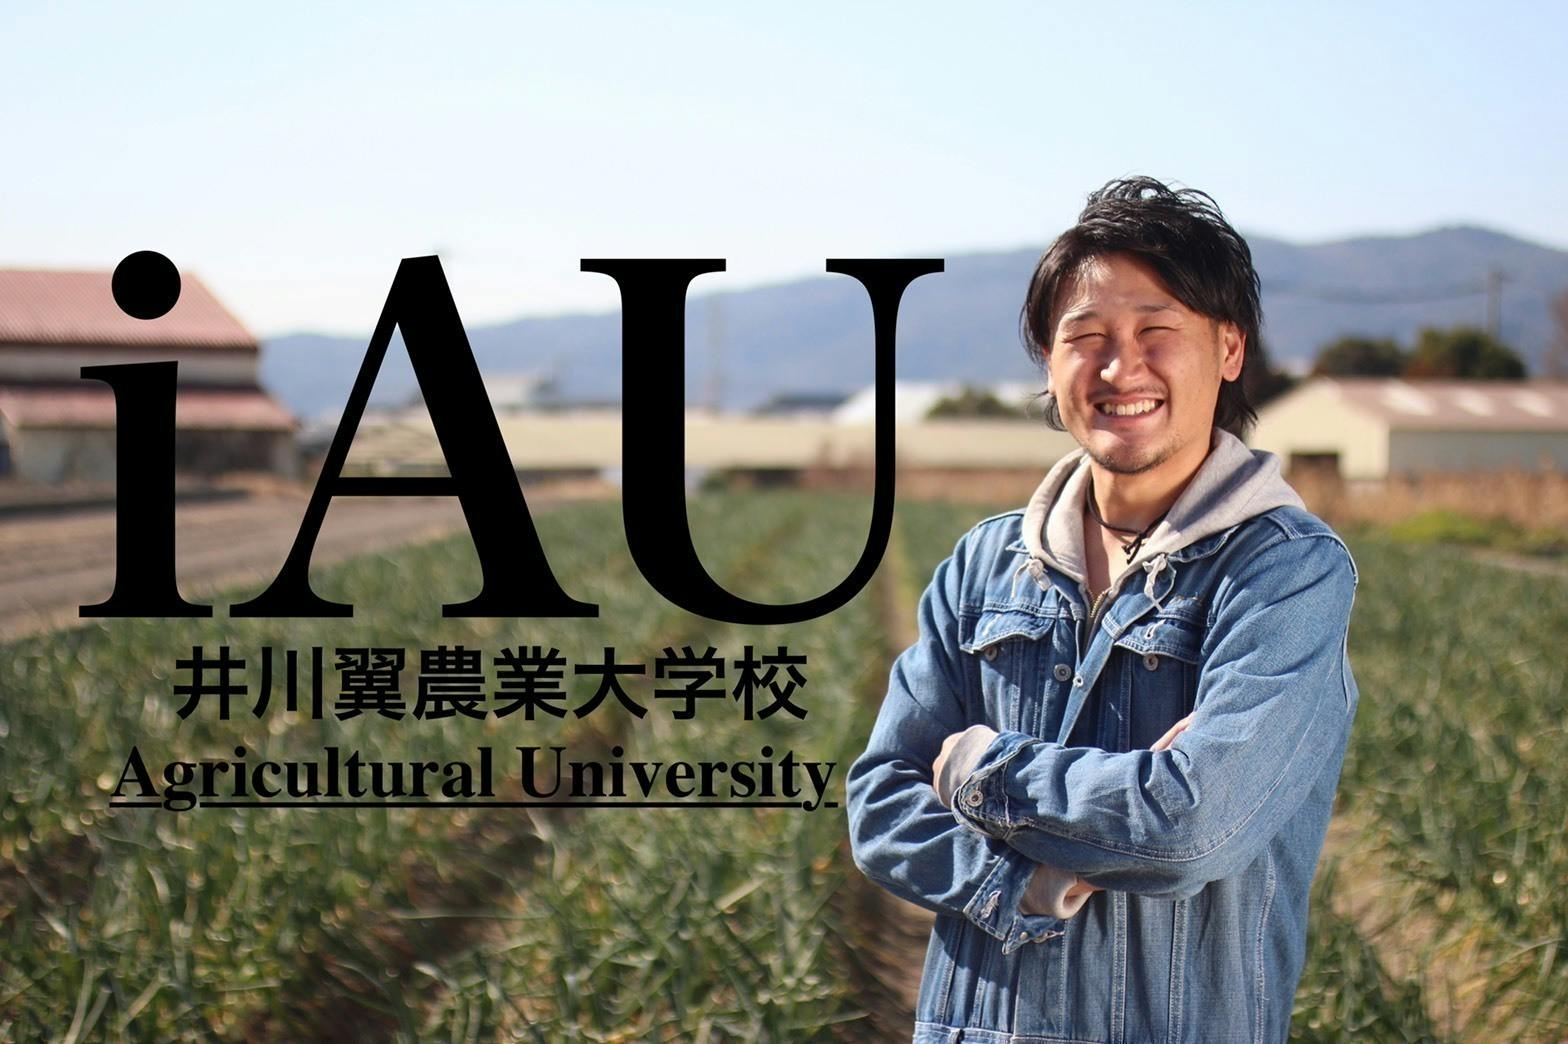 iAU(井川翼農業大学校)